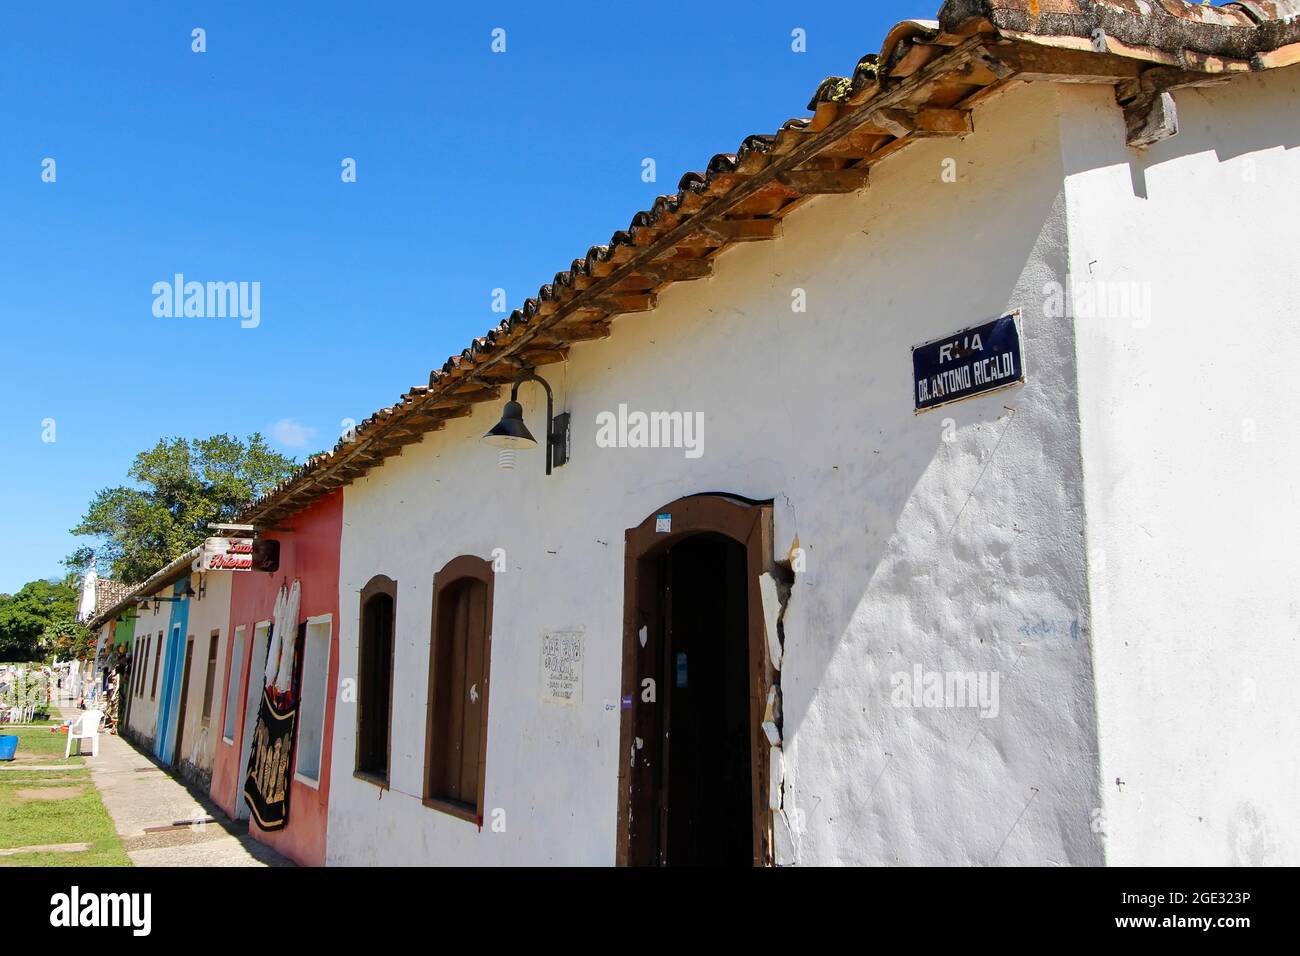 Porto Seguro, Bahia, Brazil - July 18, 2021: houses and characteristic architecture in the historic center (Cidade Alta) of Porto Seguro, Bahia Stock Photo